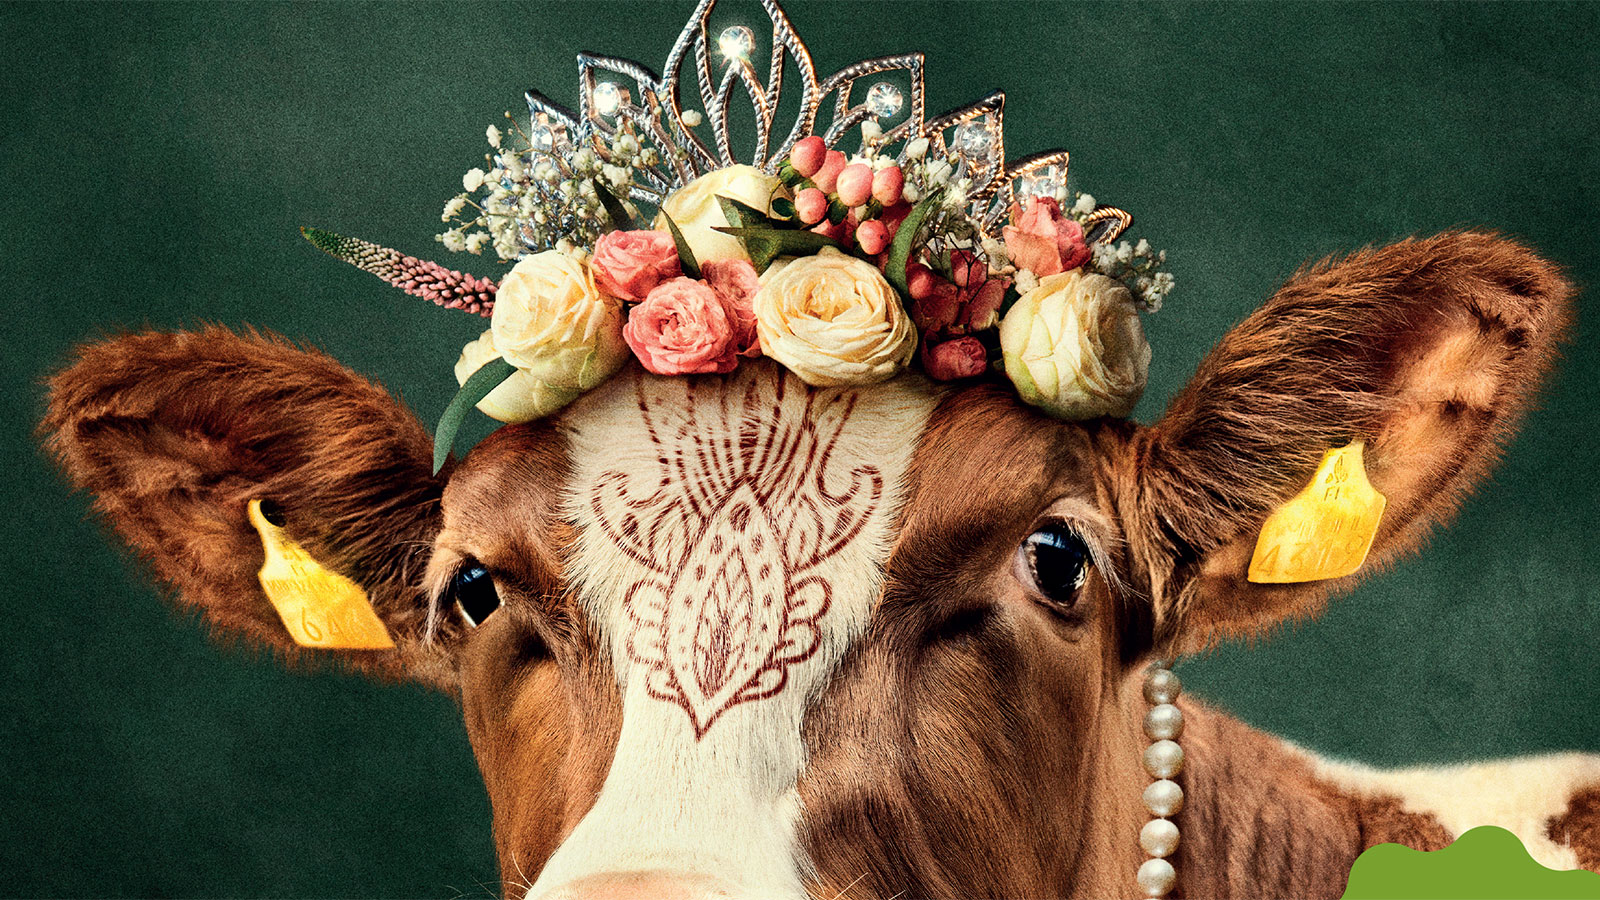 Hankkijan mainoskampanja lähestyy maitotilallisia pilke silmäkulmassa. Kampanjalla halutaan viestiä, että EKM-rehua nauttineet lehmät kuuluvat kermojen kermaan.